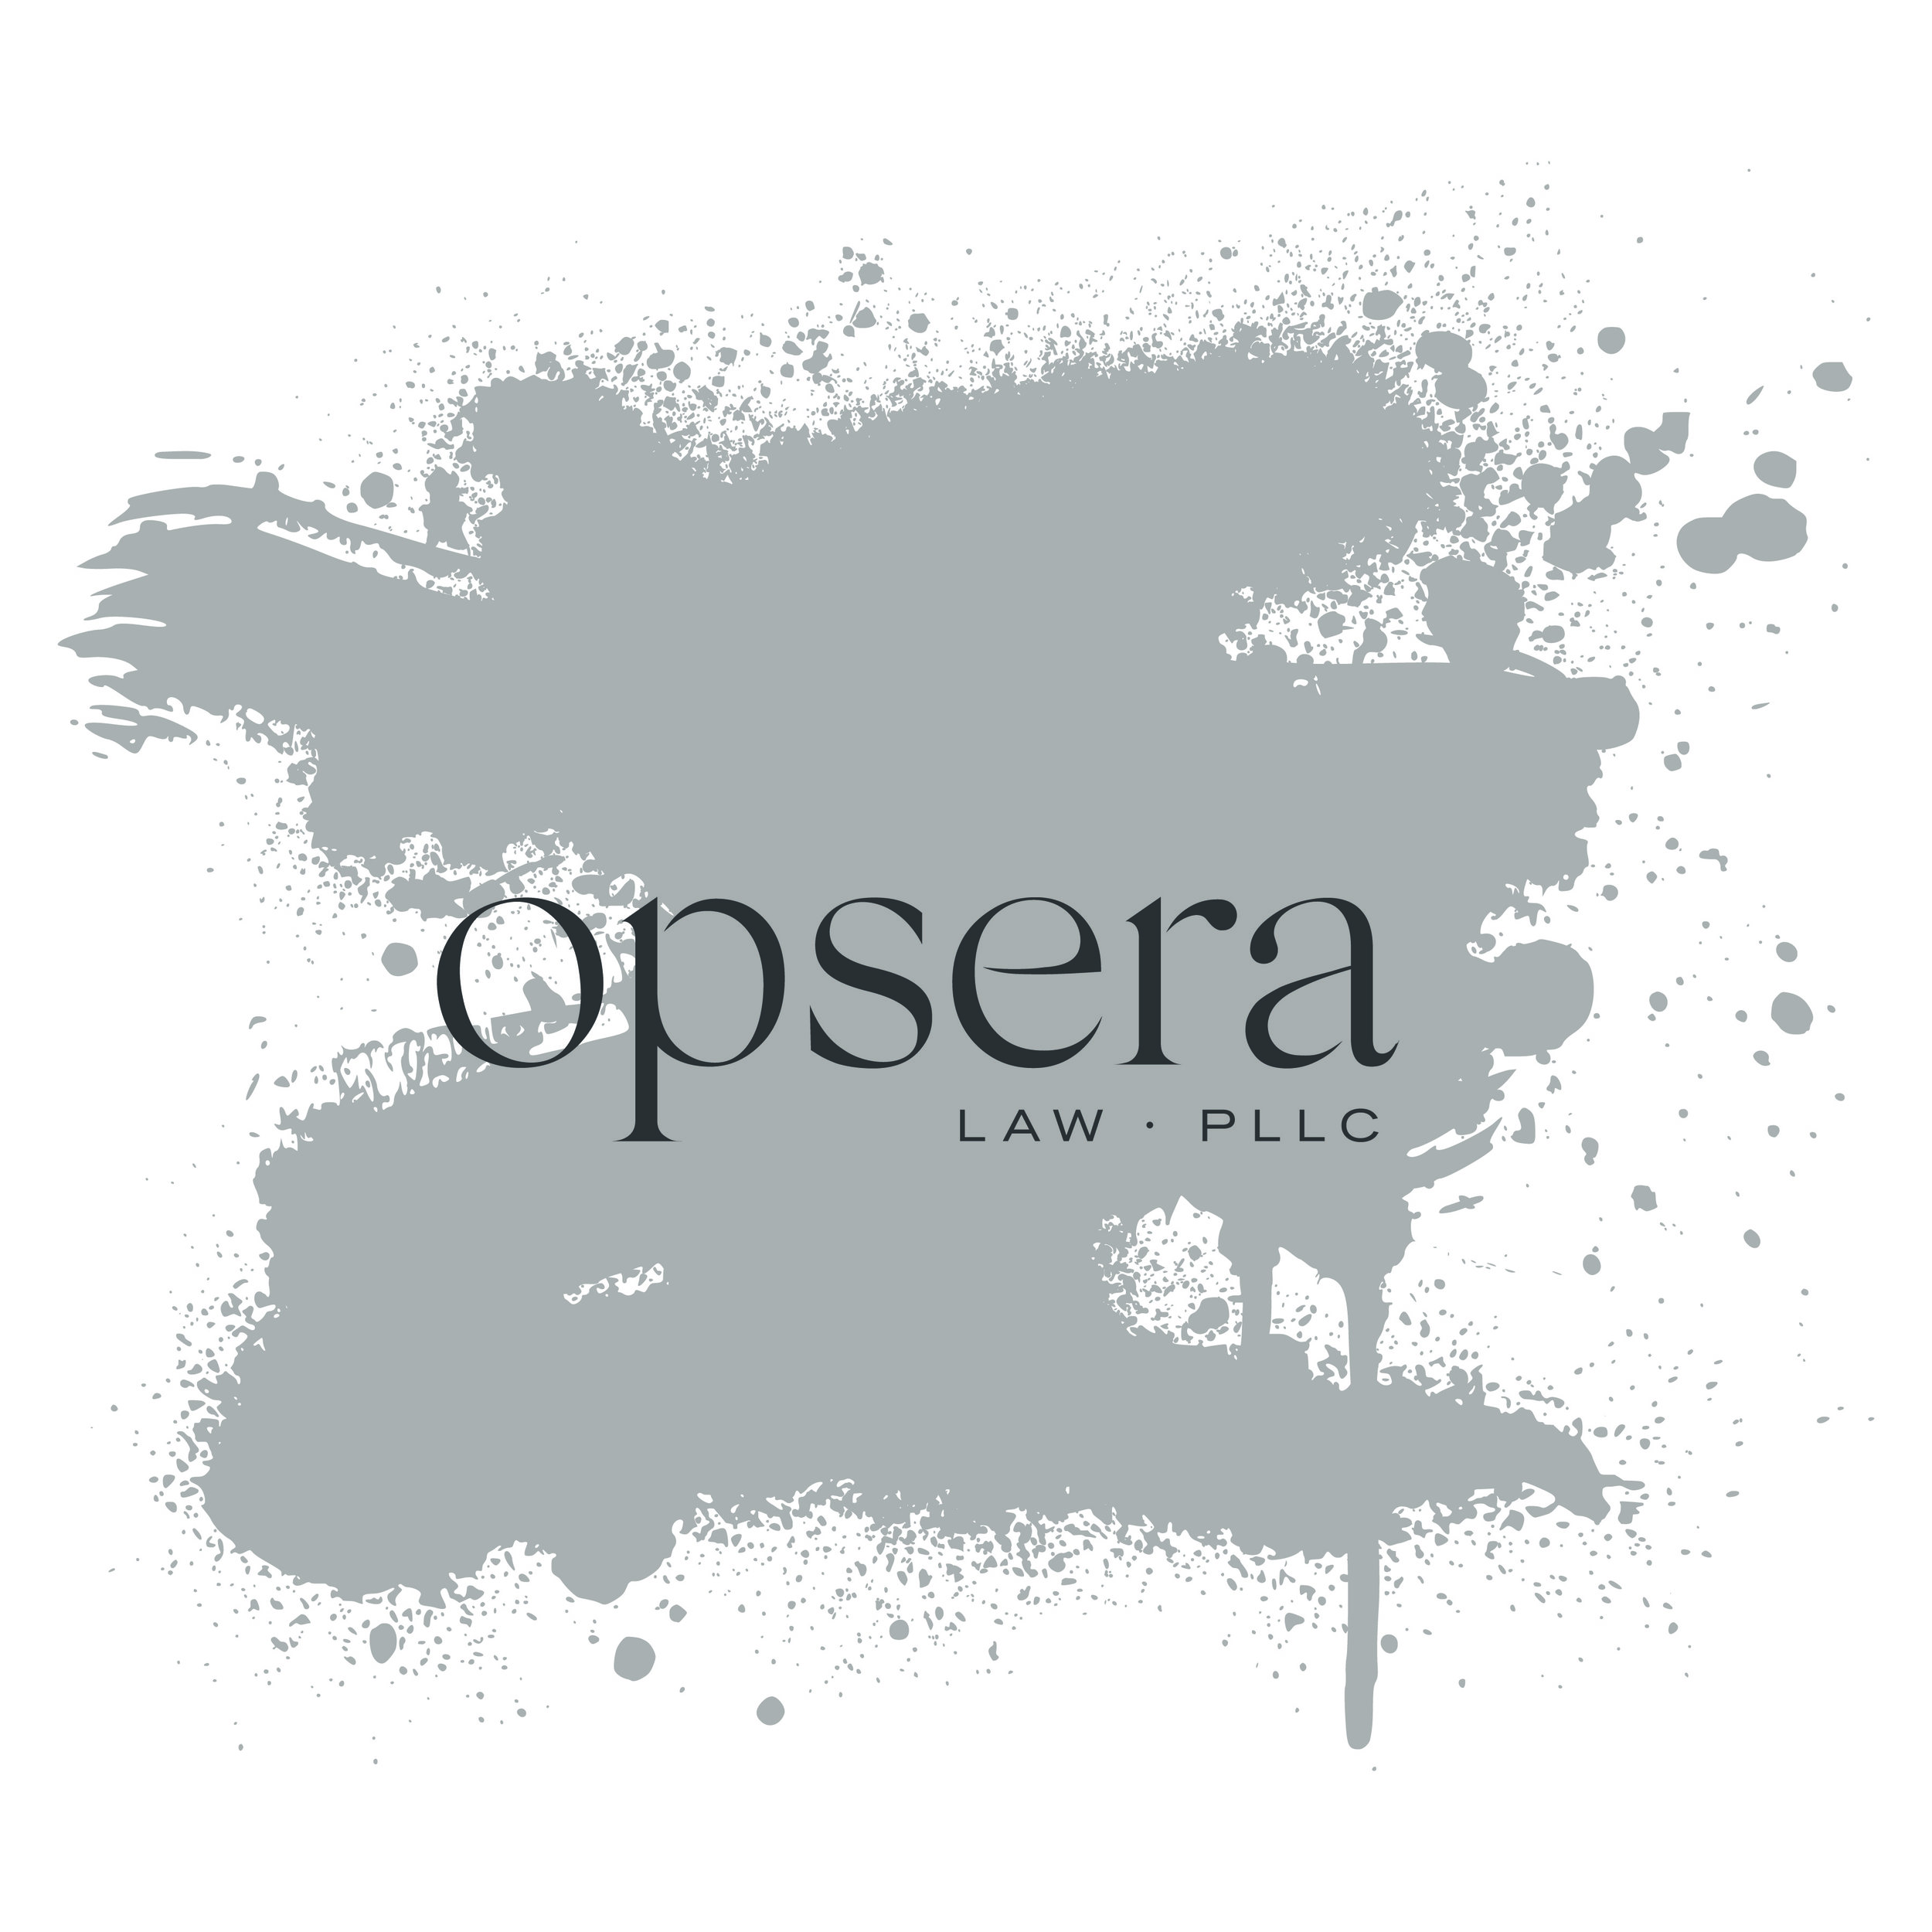 Opsera Law